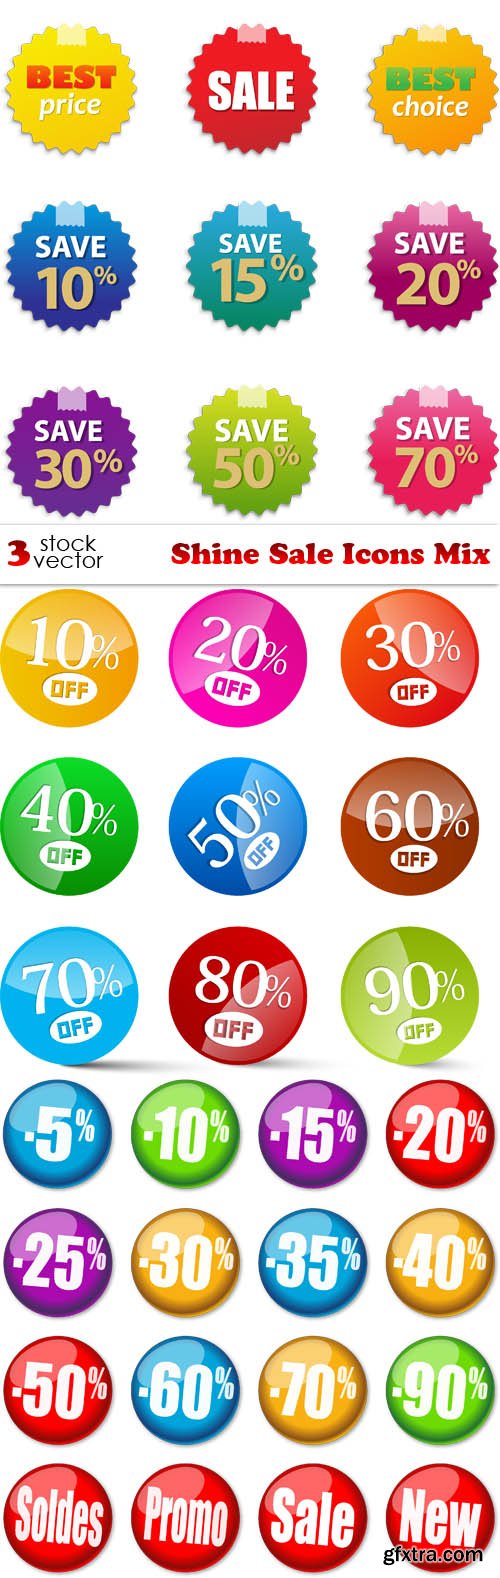 Vectors - Shine Sale Icons Mix